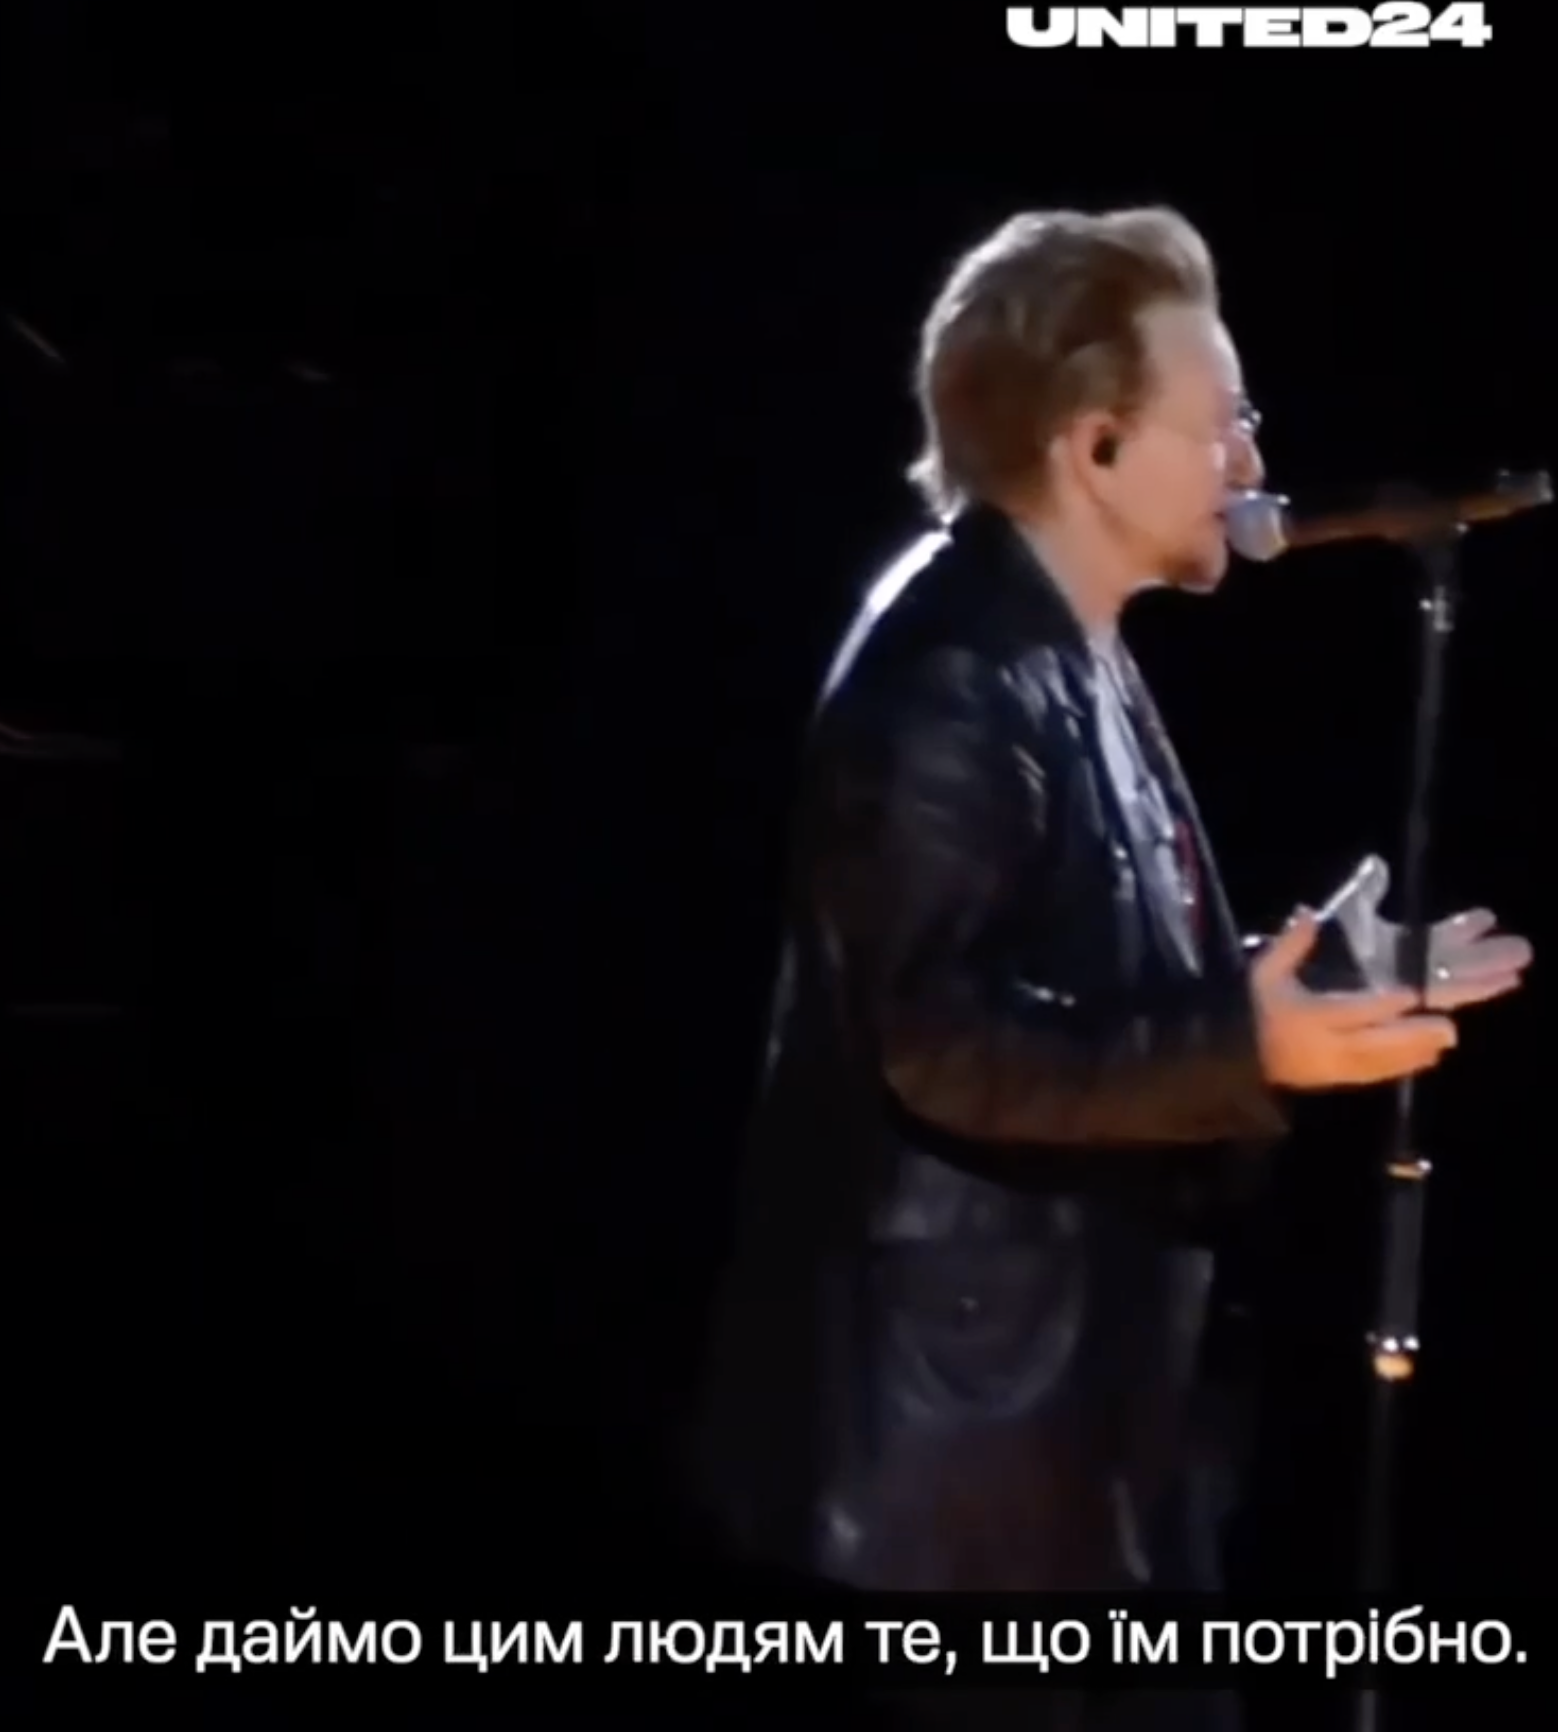 "Они борются за нашу свободу": лидер культовой группы U2 Боно на концерте в Лас-Вегасе призвал США помогать Украине. Видео